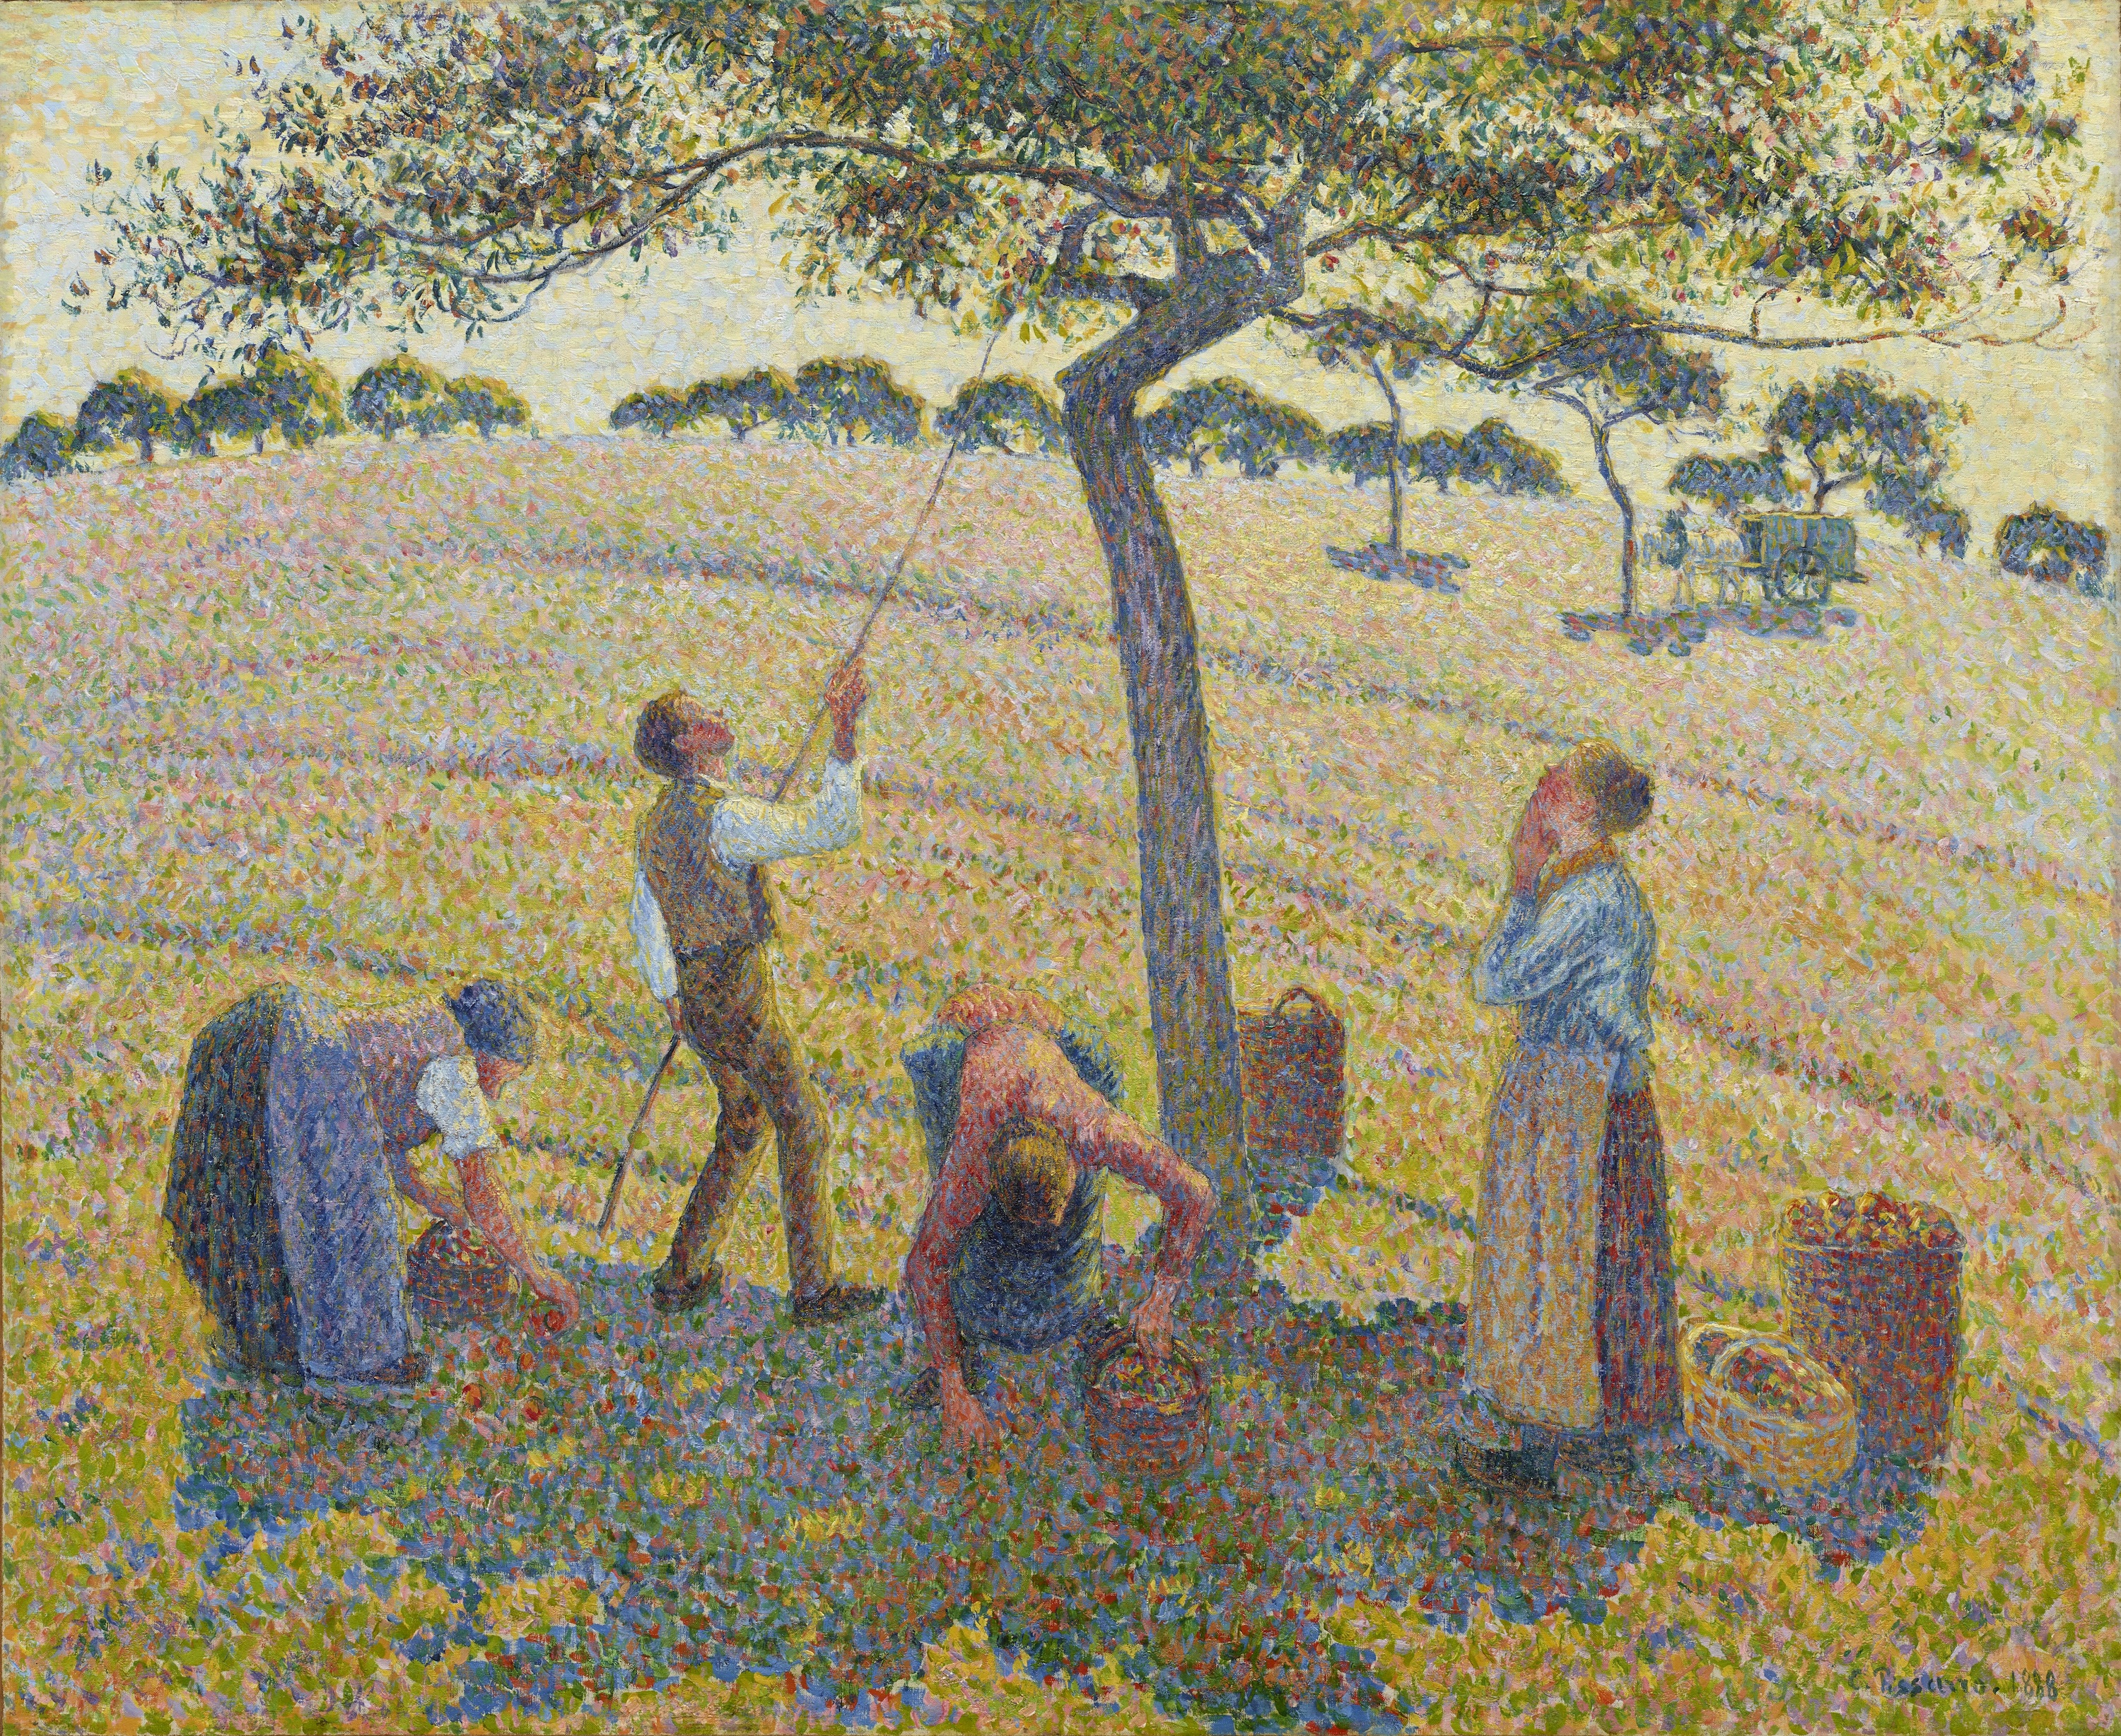 사과 수확 by Camille Pissarro - 1888년 - 61 x 74 cm 